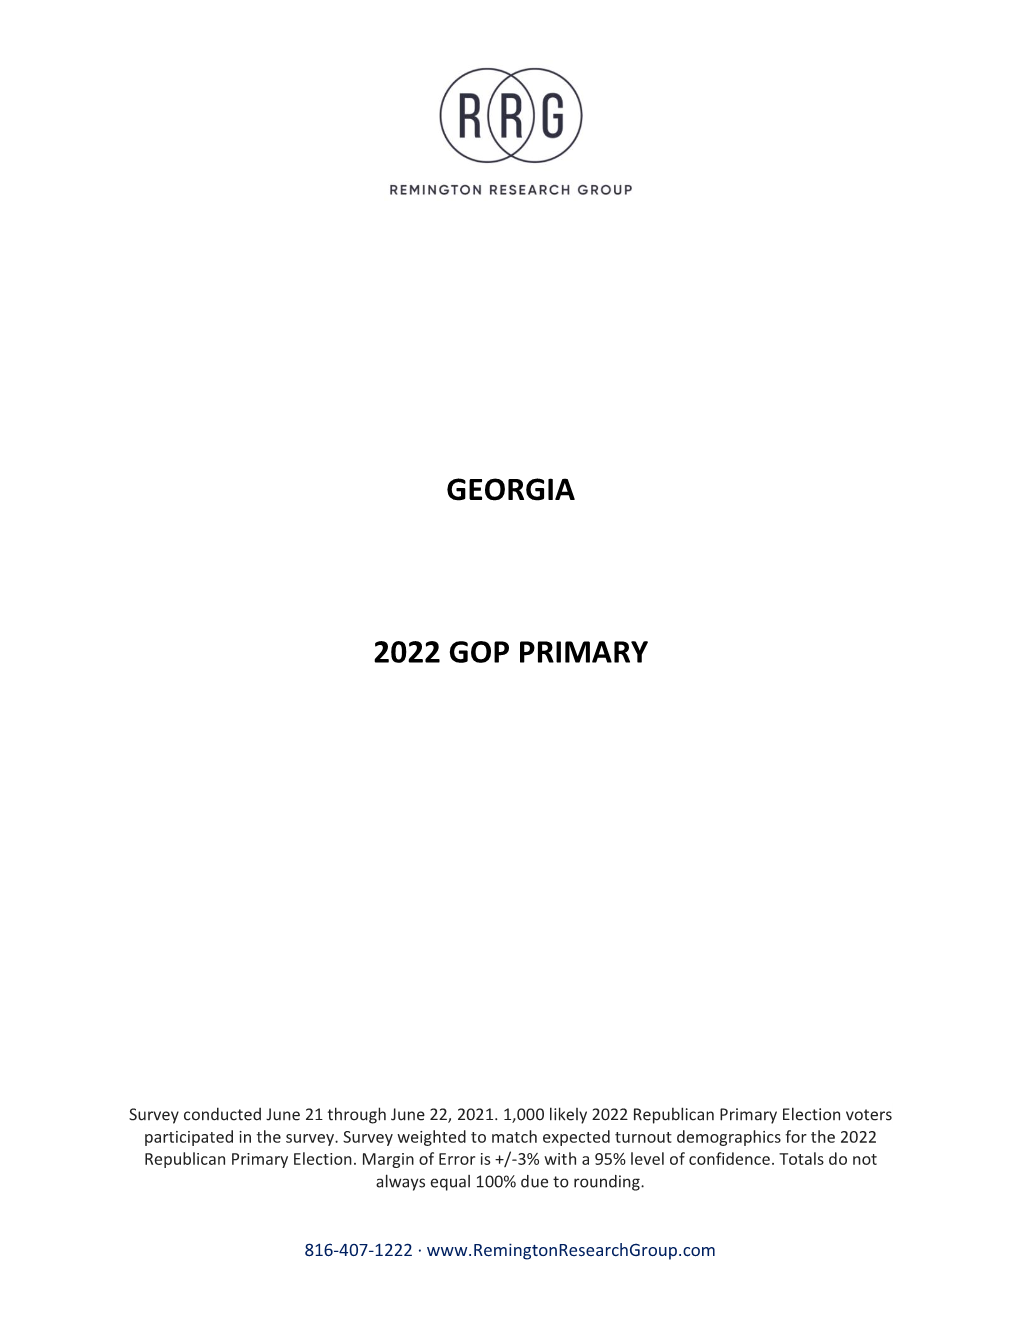 Georgia 2022 Gop Primary